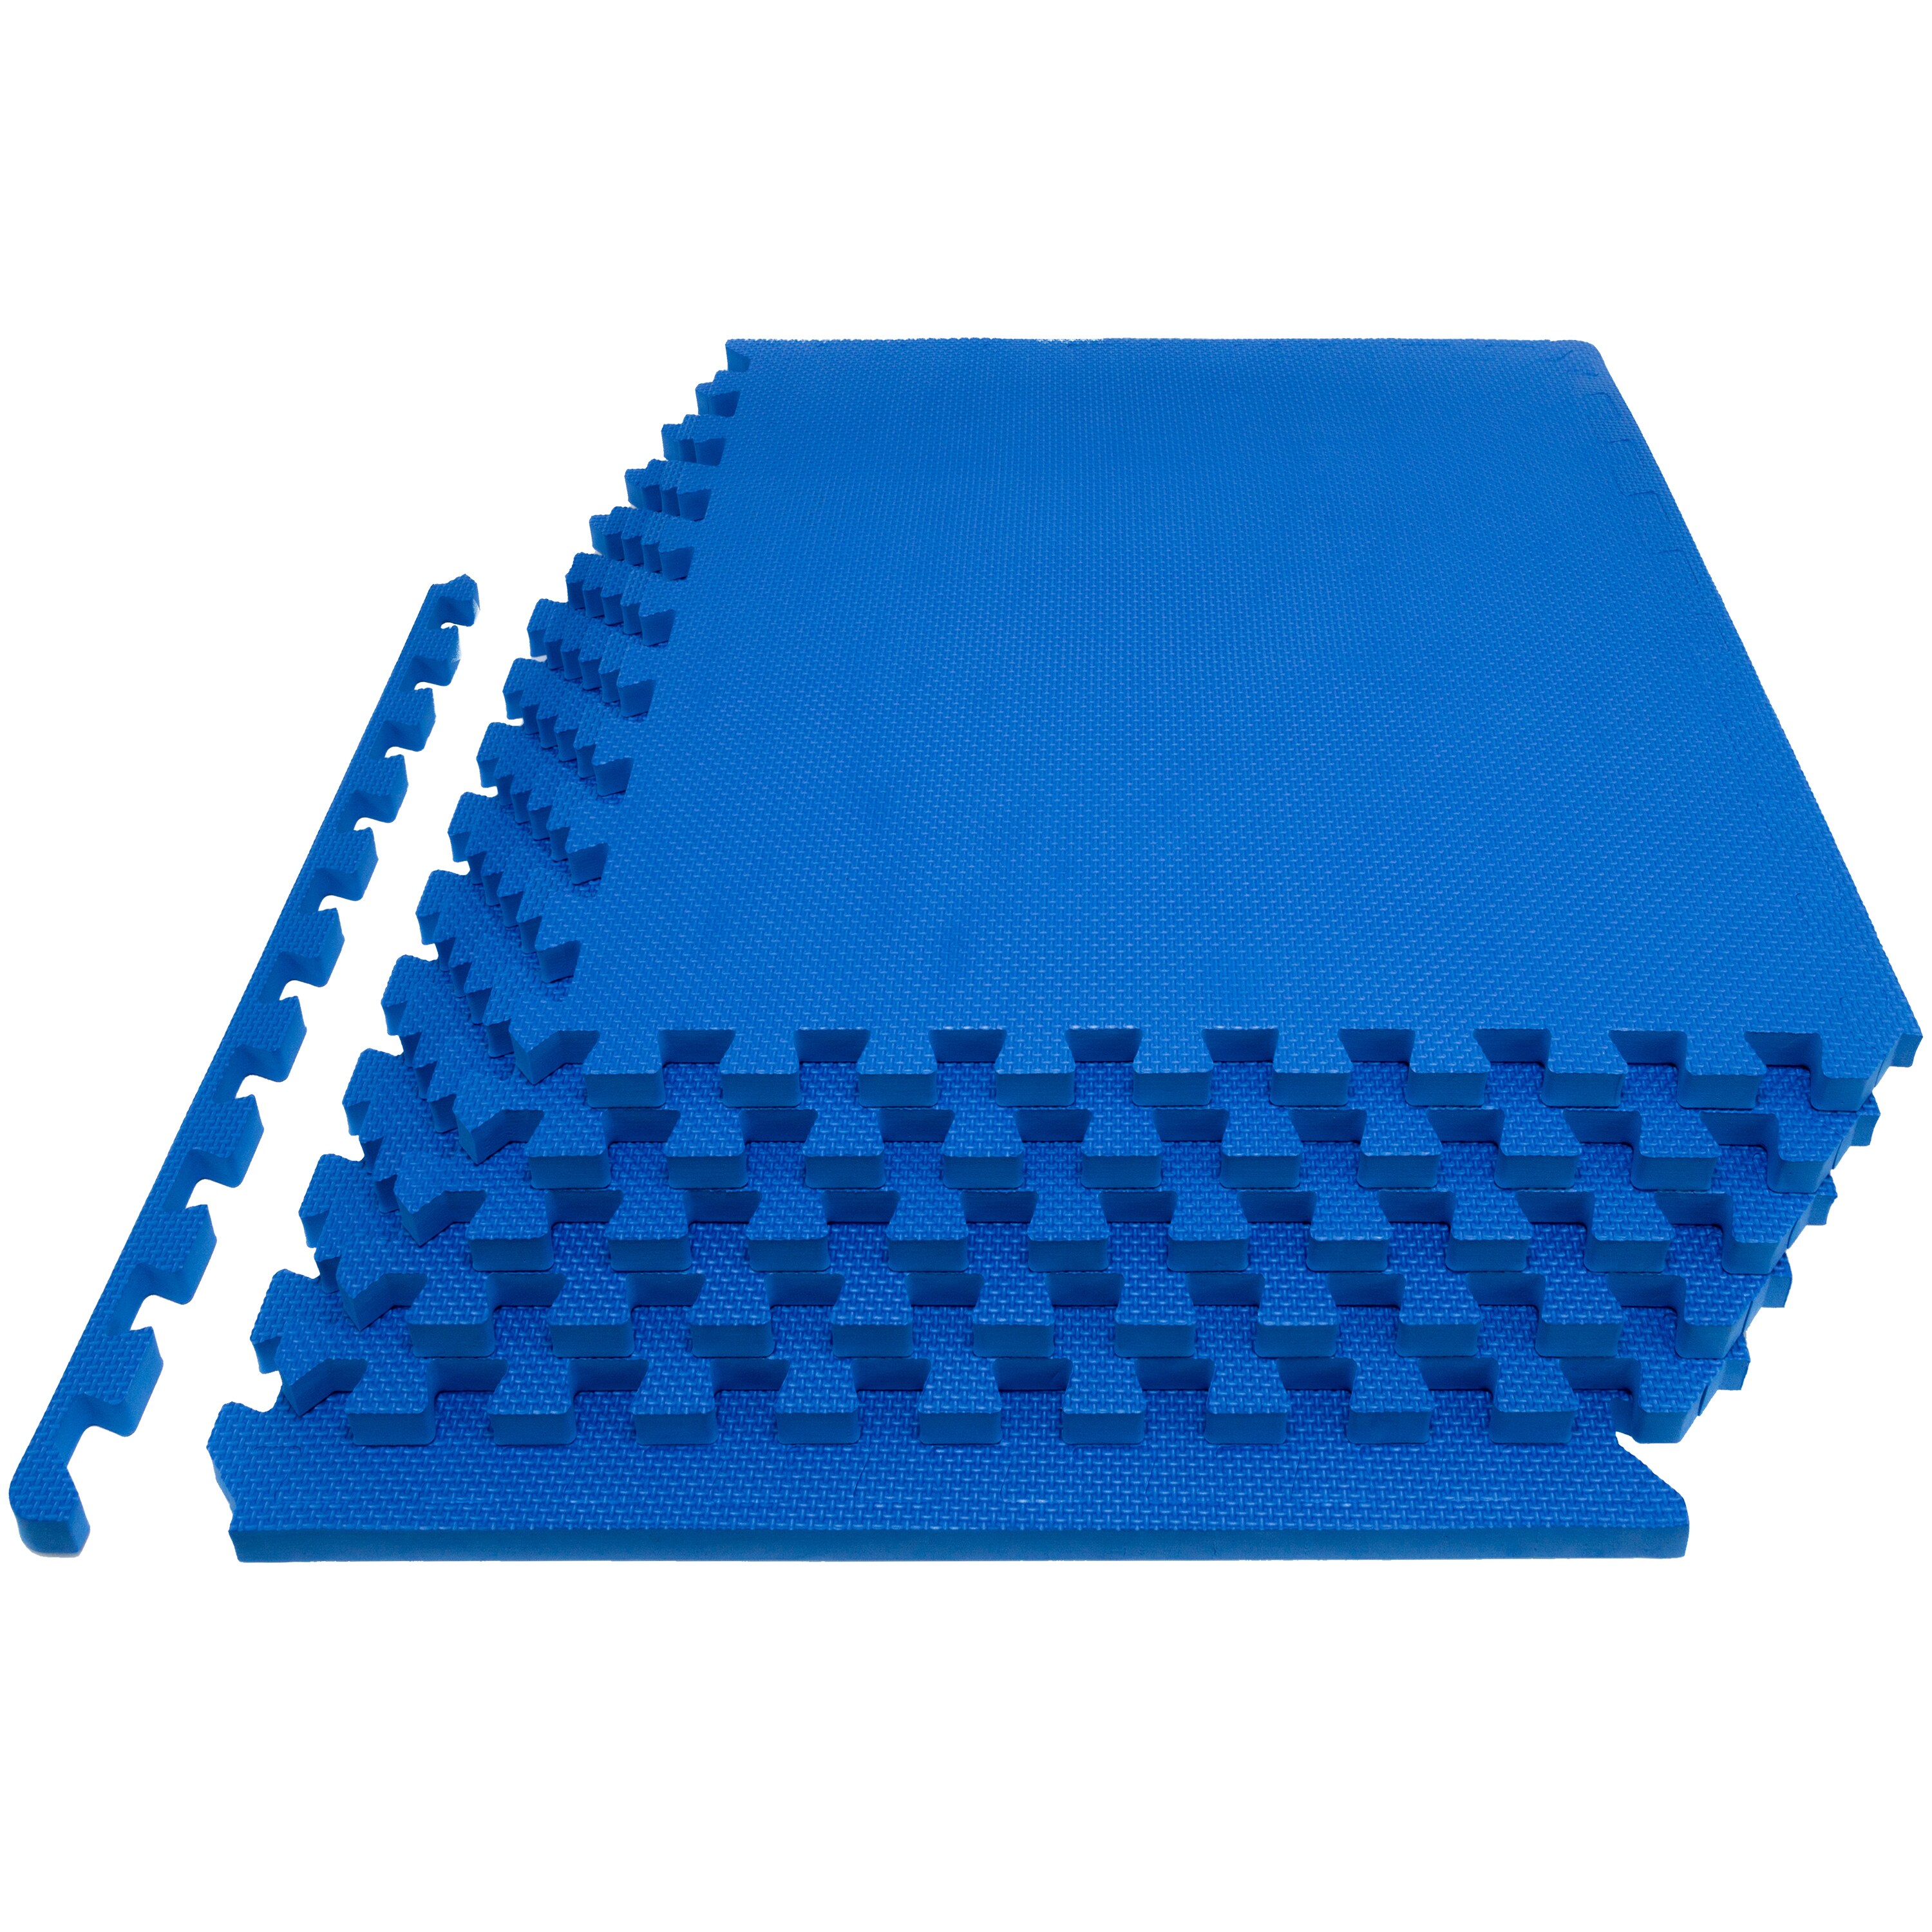 168 sqft green interlocking foam floor puzzle tiles mat puzzle mat flooring 